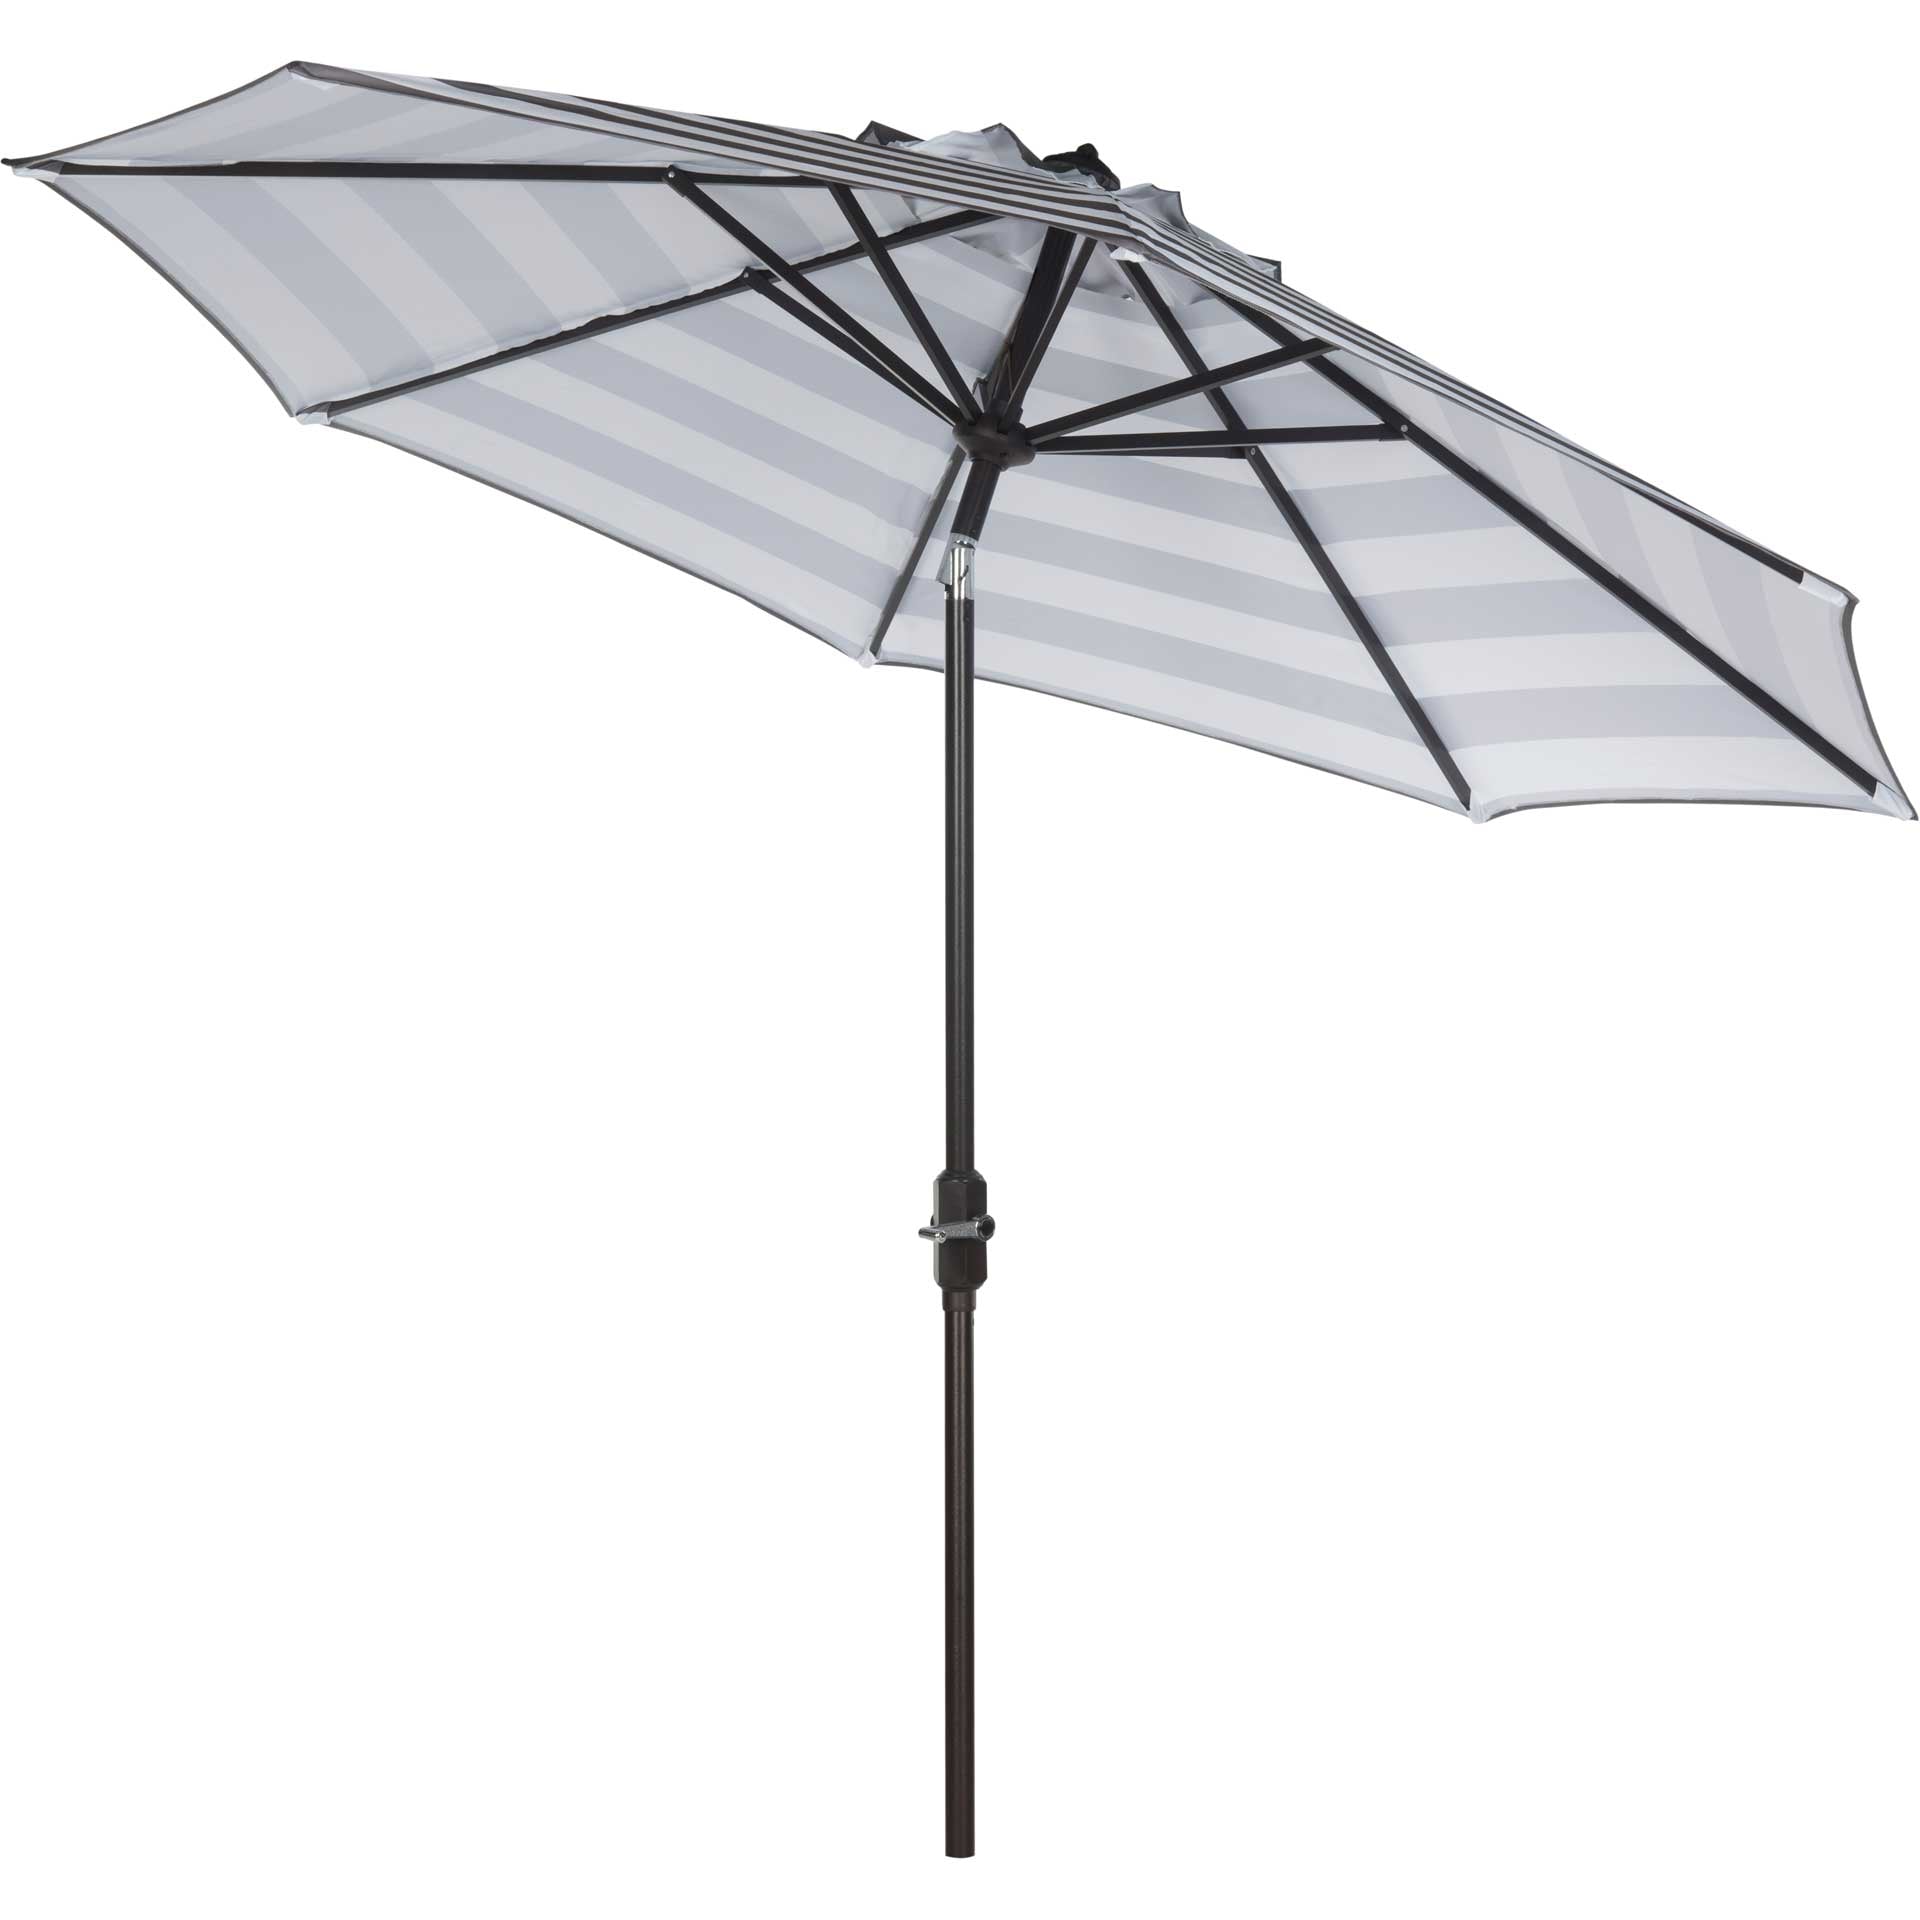 Irvin Uv Resistant Auto Tilt Umbrella Gray/White